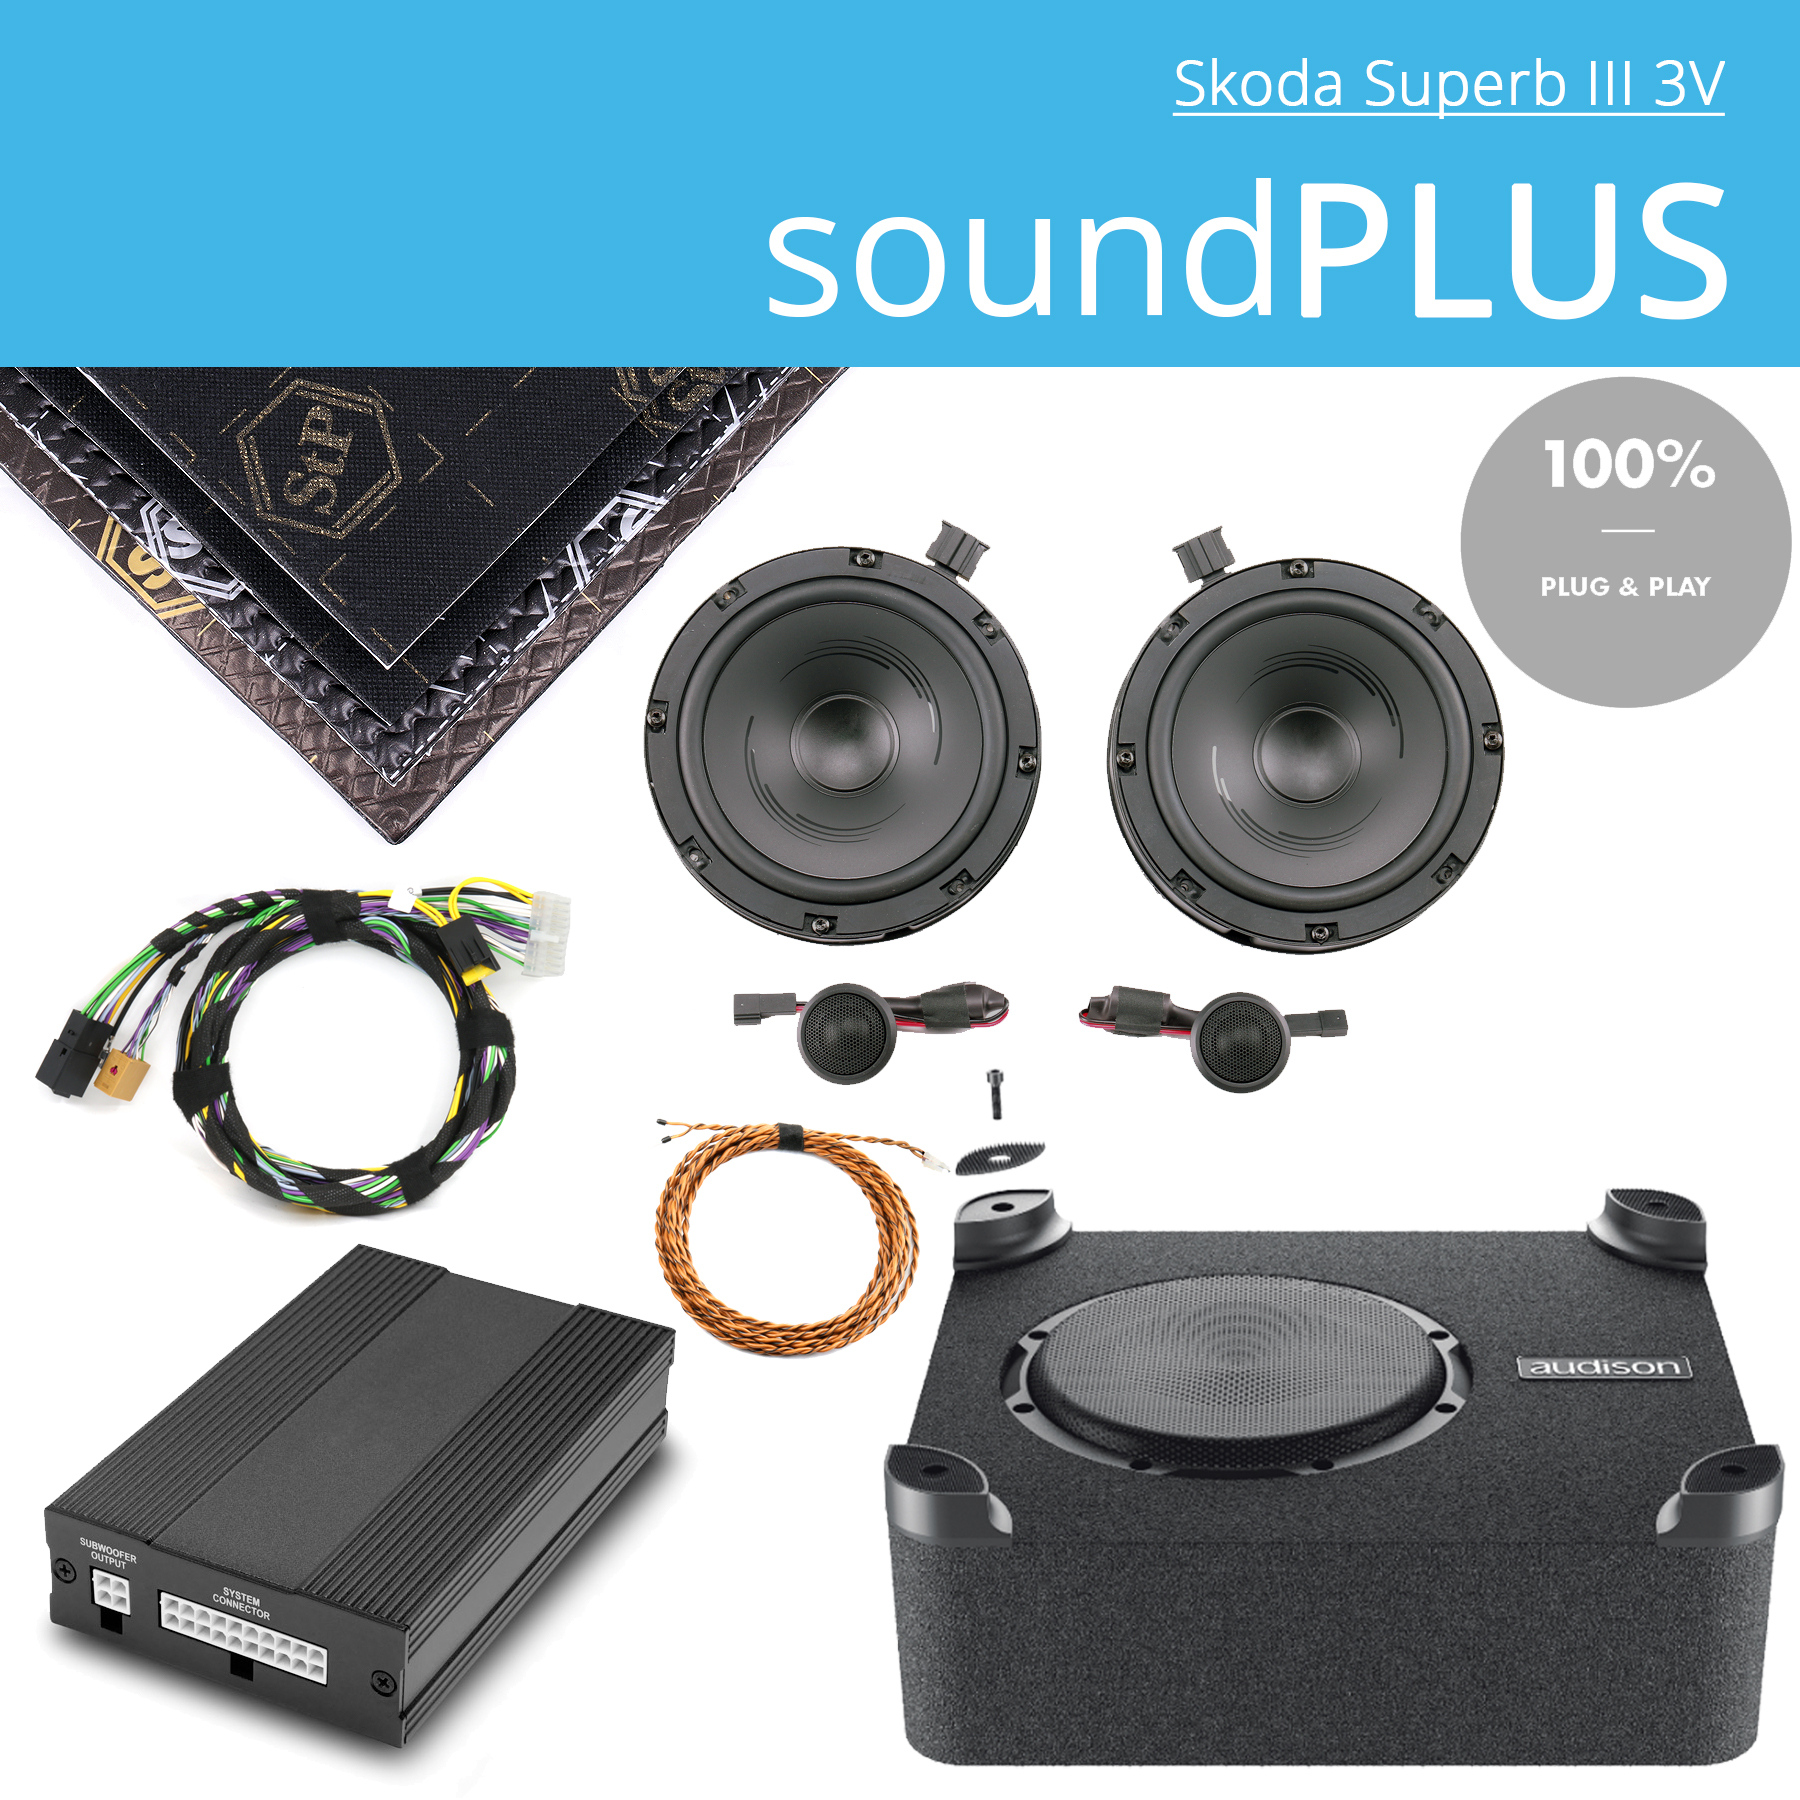 Skoda Superb III 3V soundPLUS